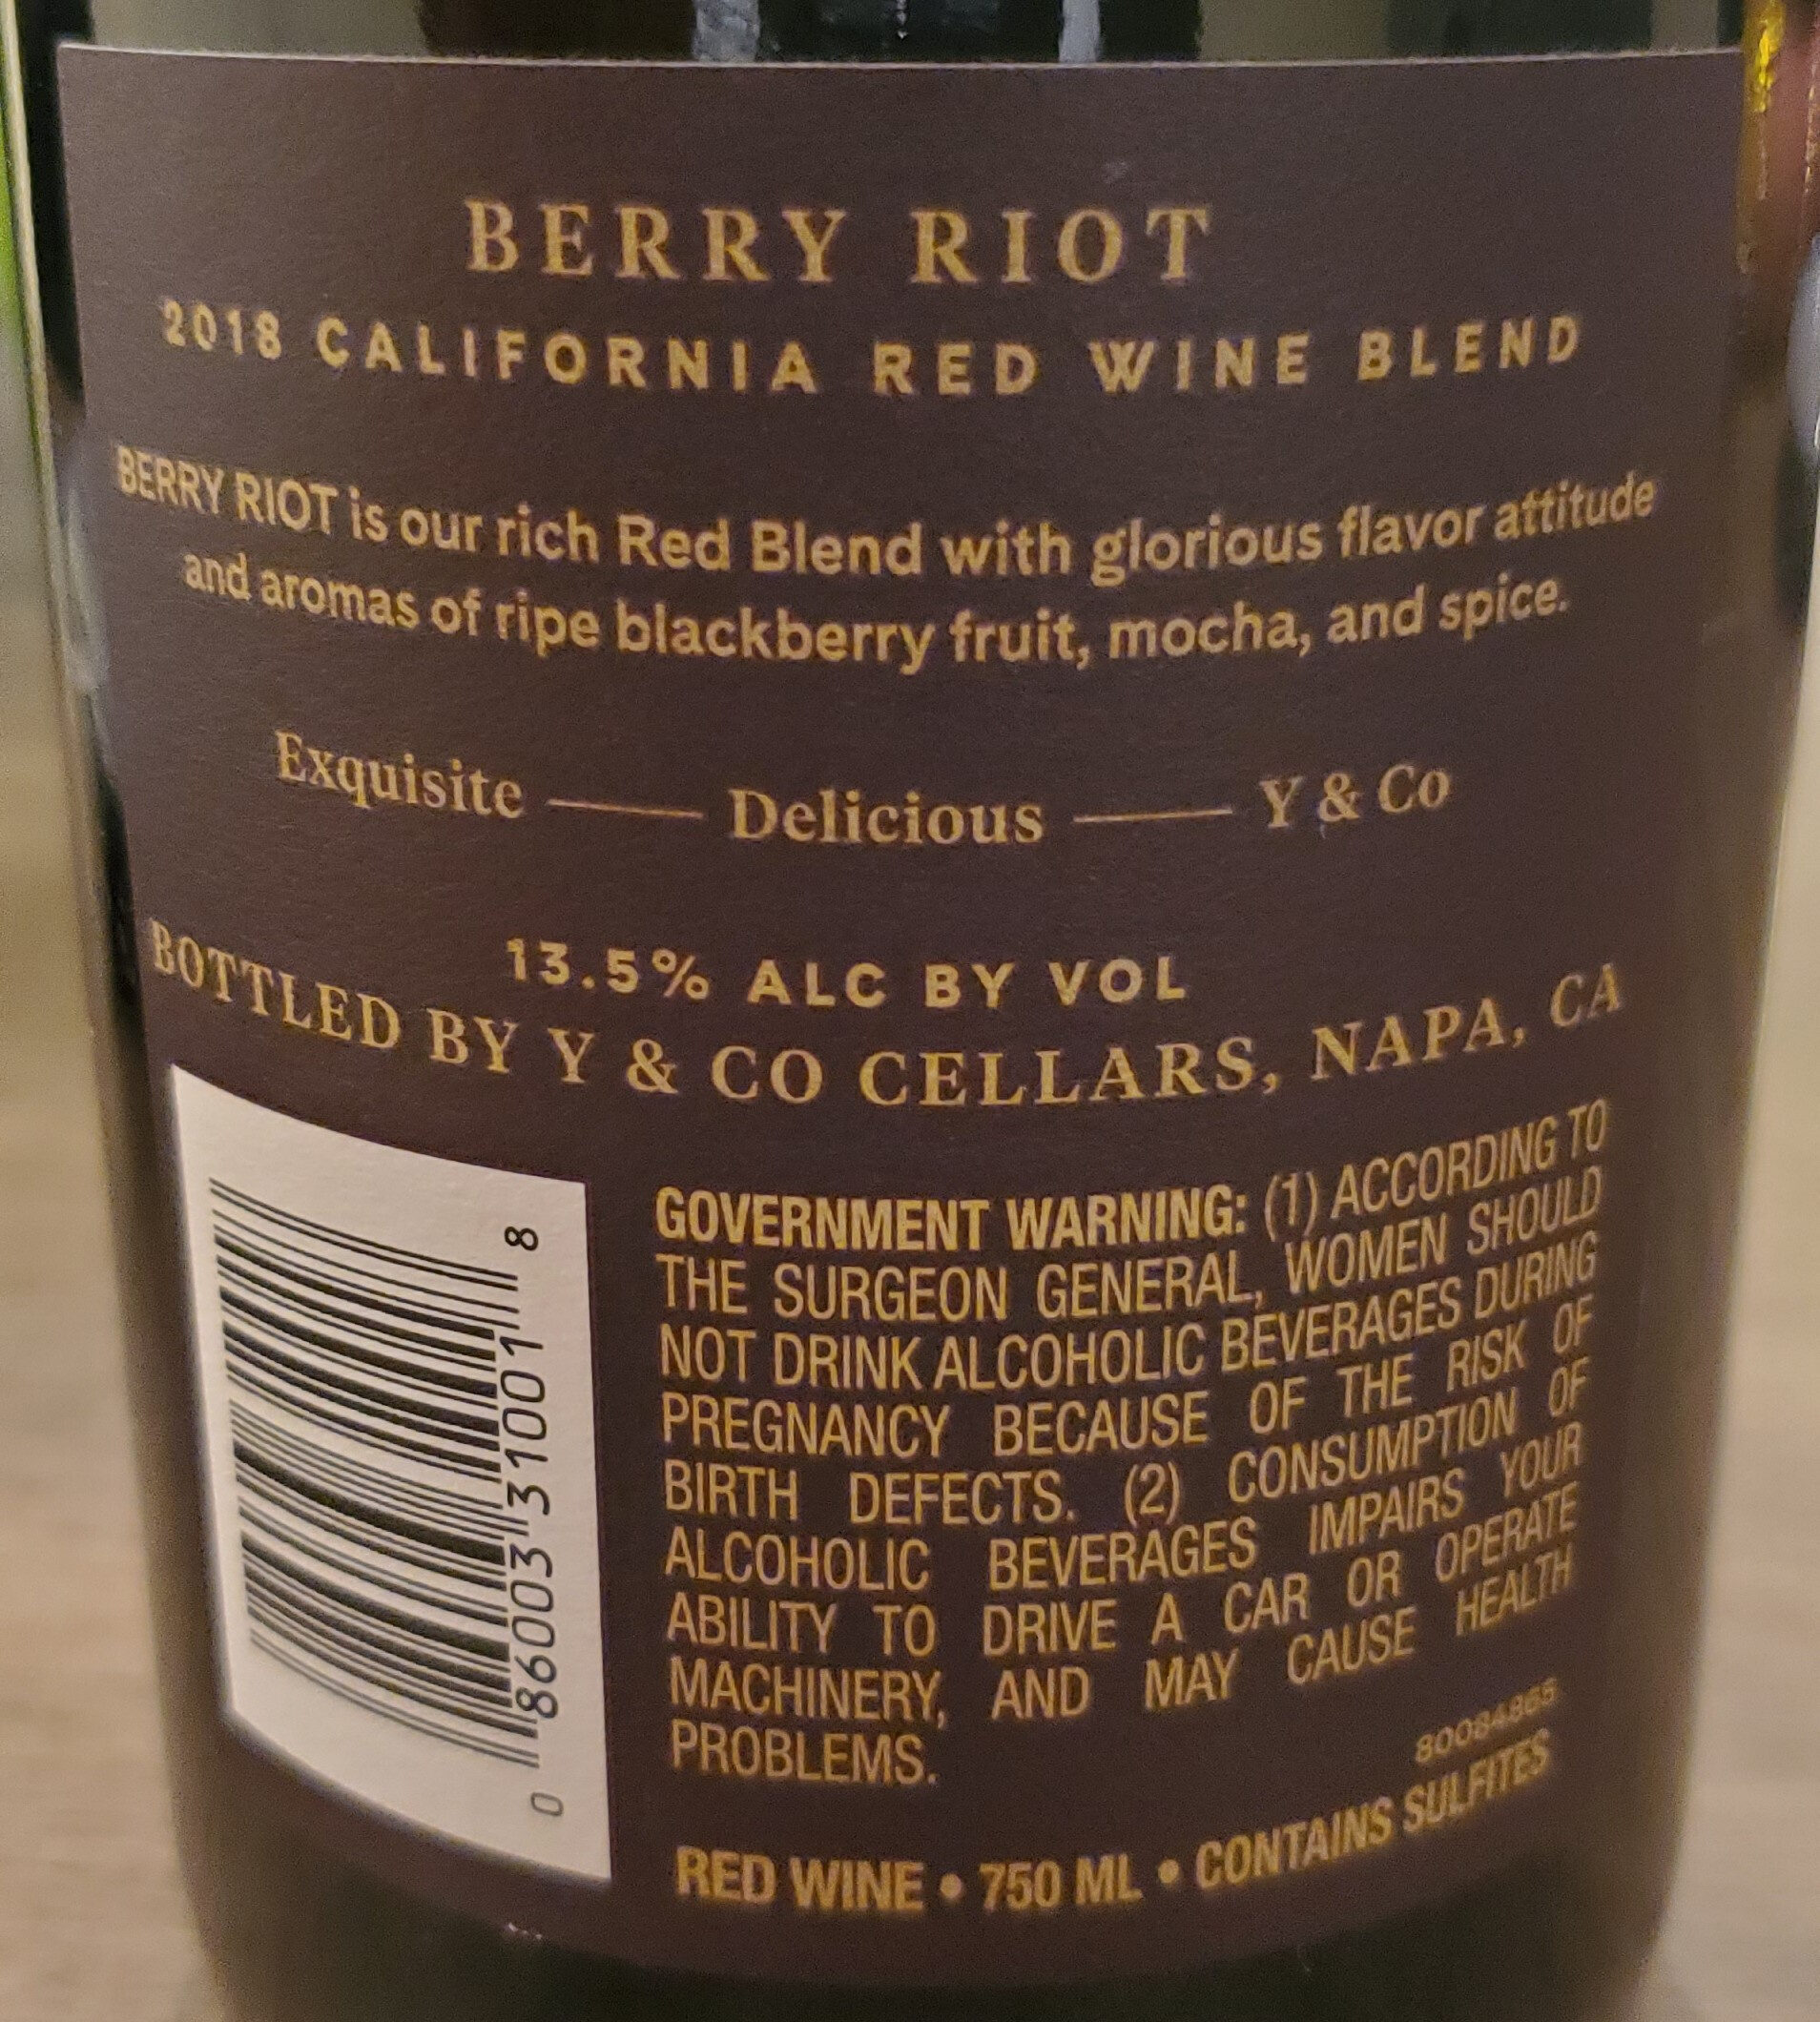 Berry Riot 2018 Red Wine Blend - Produkt - en